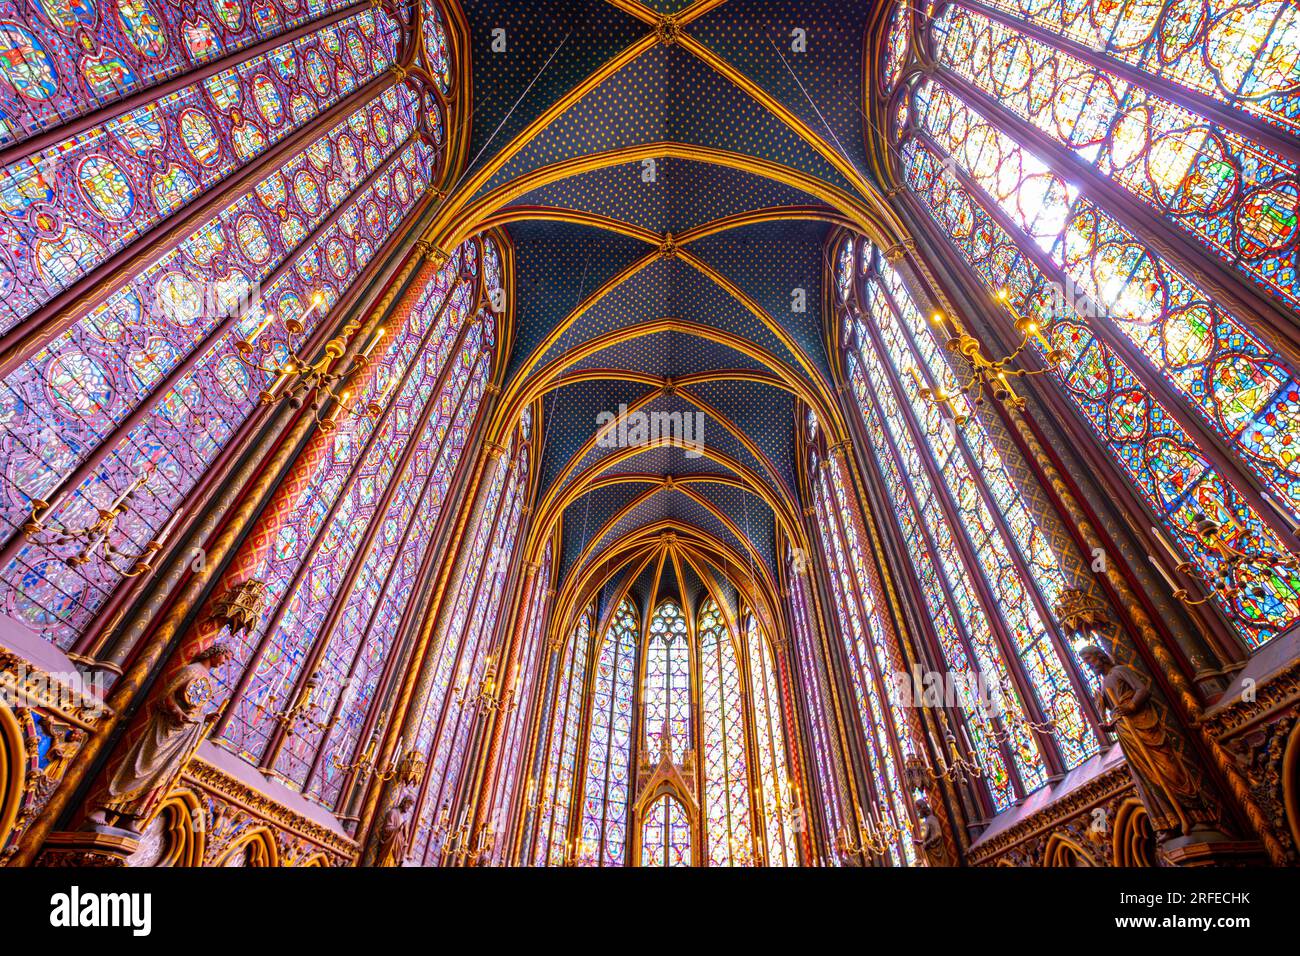 Monumentales Interieur der Sainte-Chapelle mit Buntglasfenstern, obere Ebene der königlichen Kapelle im gotischen Stil. Palais de la Cite, Paris, Frankreich Stockfoto